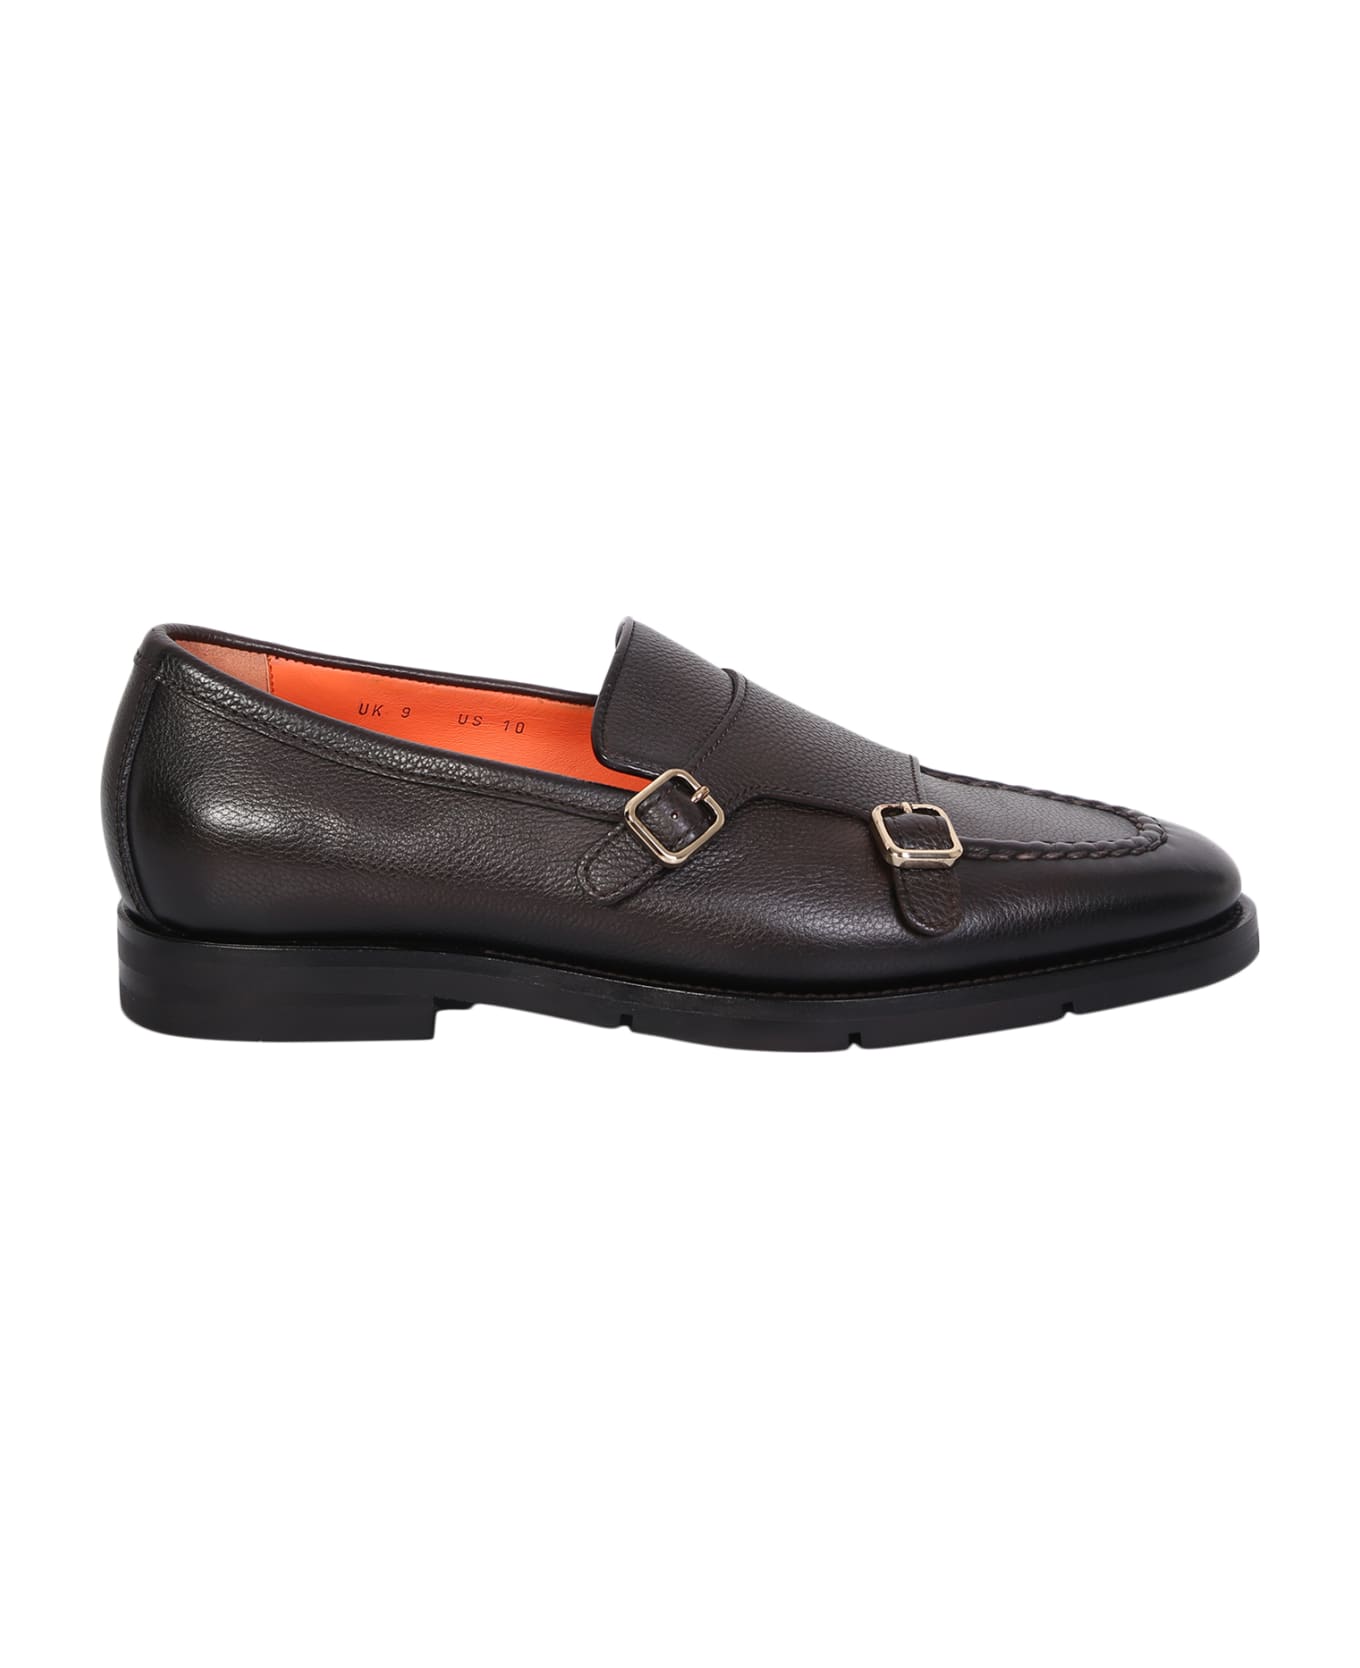 Santoni Double Strap Monk Shoes Brown - Brown